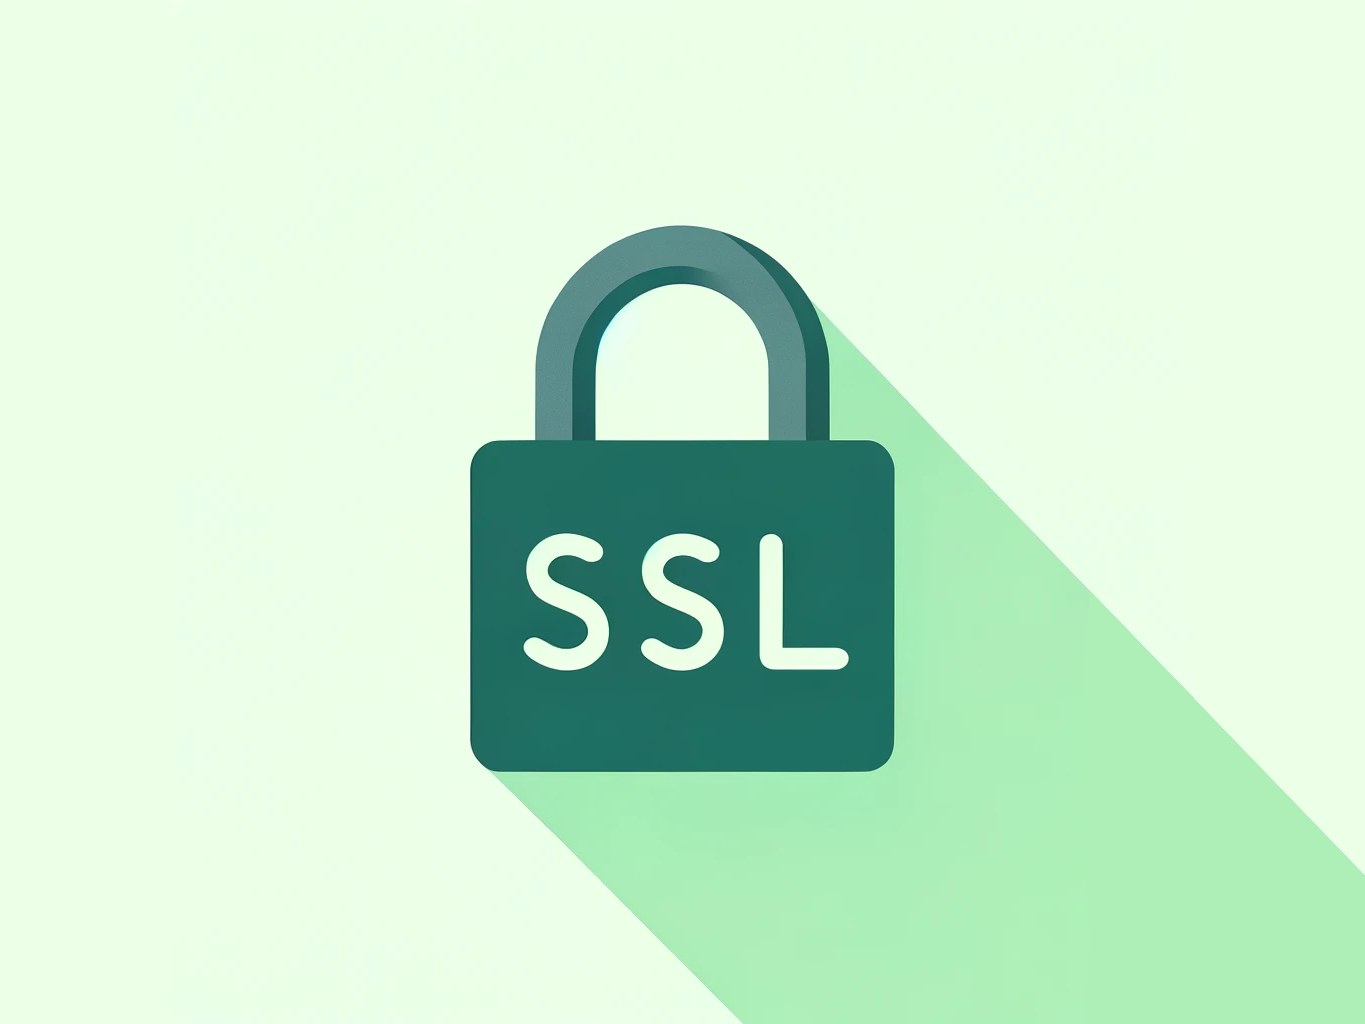 SSL là gì?